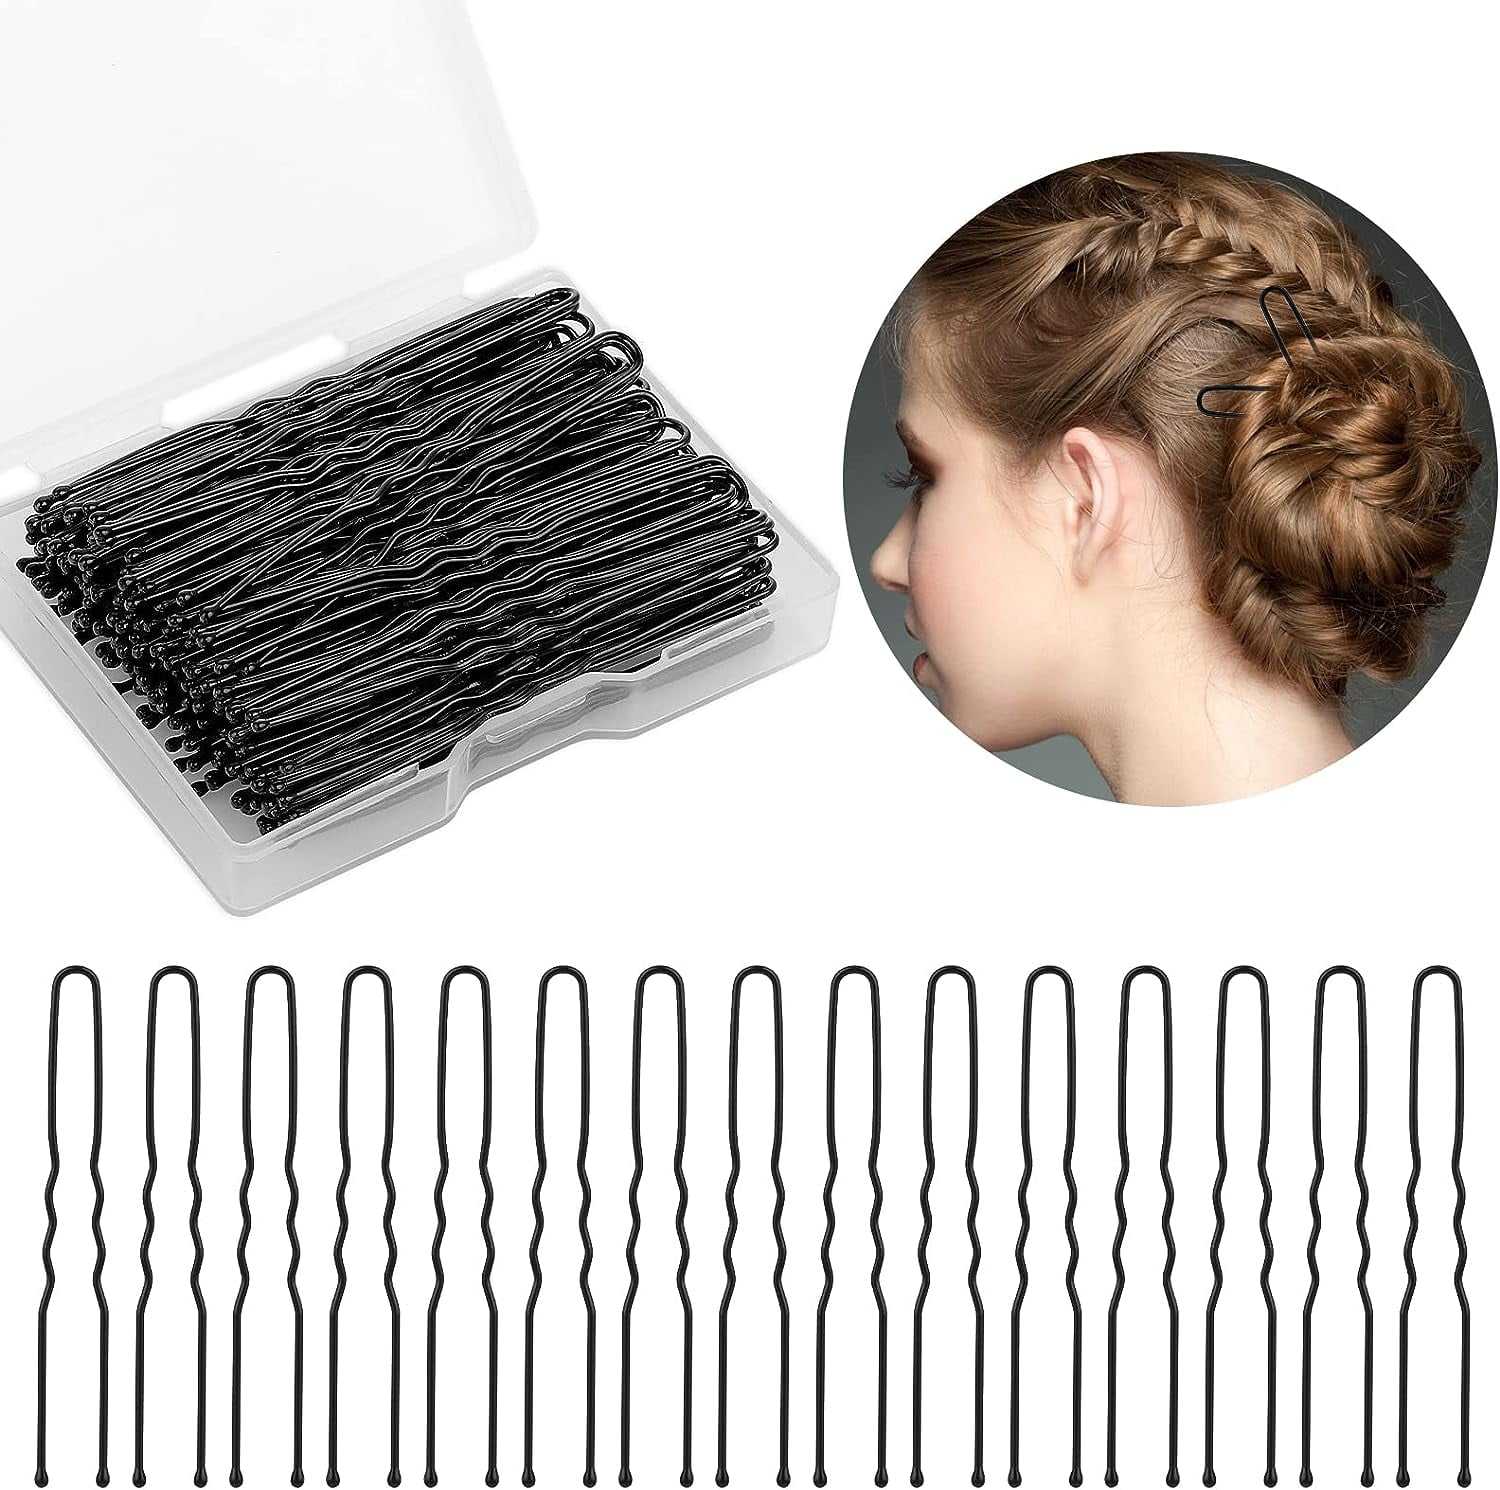 U Shaped Hair Pins, 100pcs Buns Waved U-shaped Hair Pins For Updos